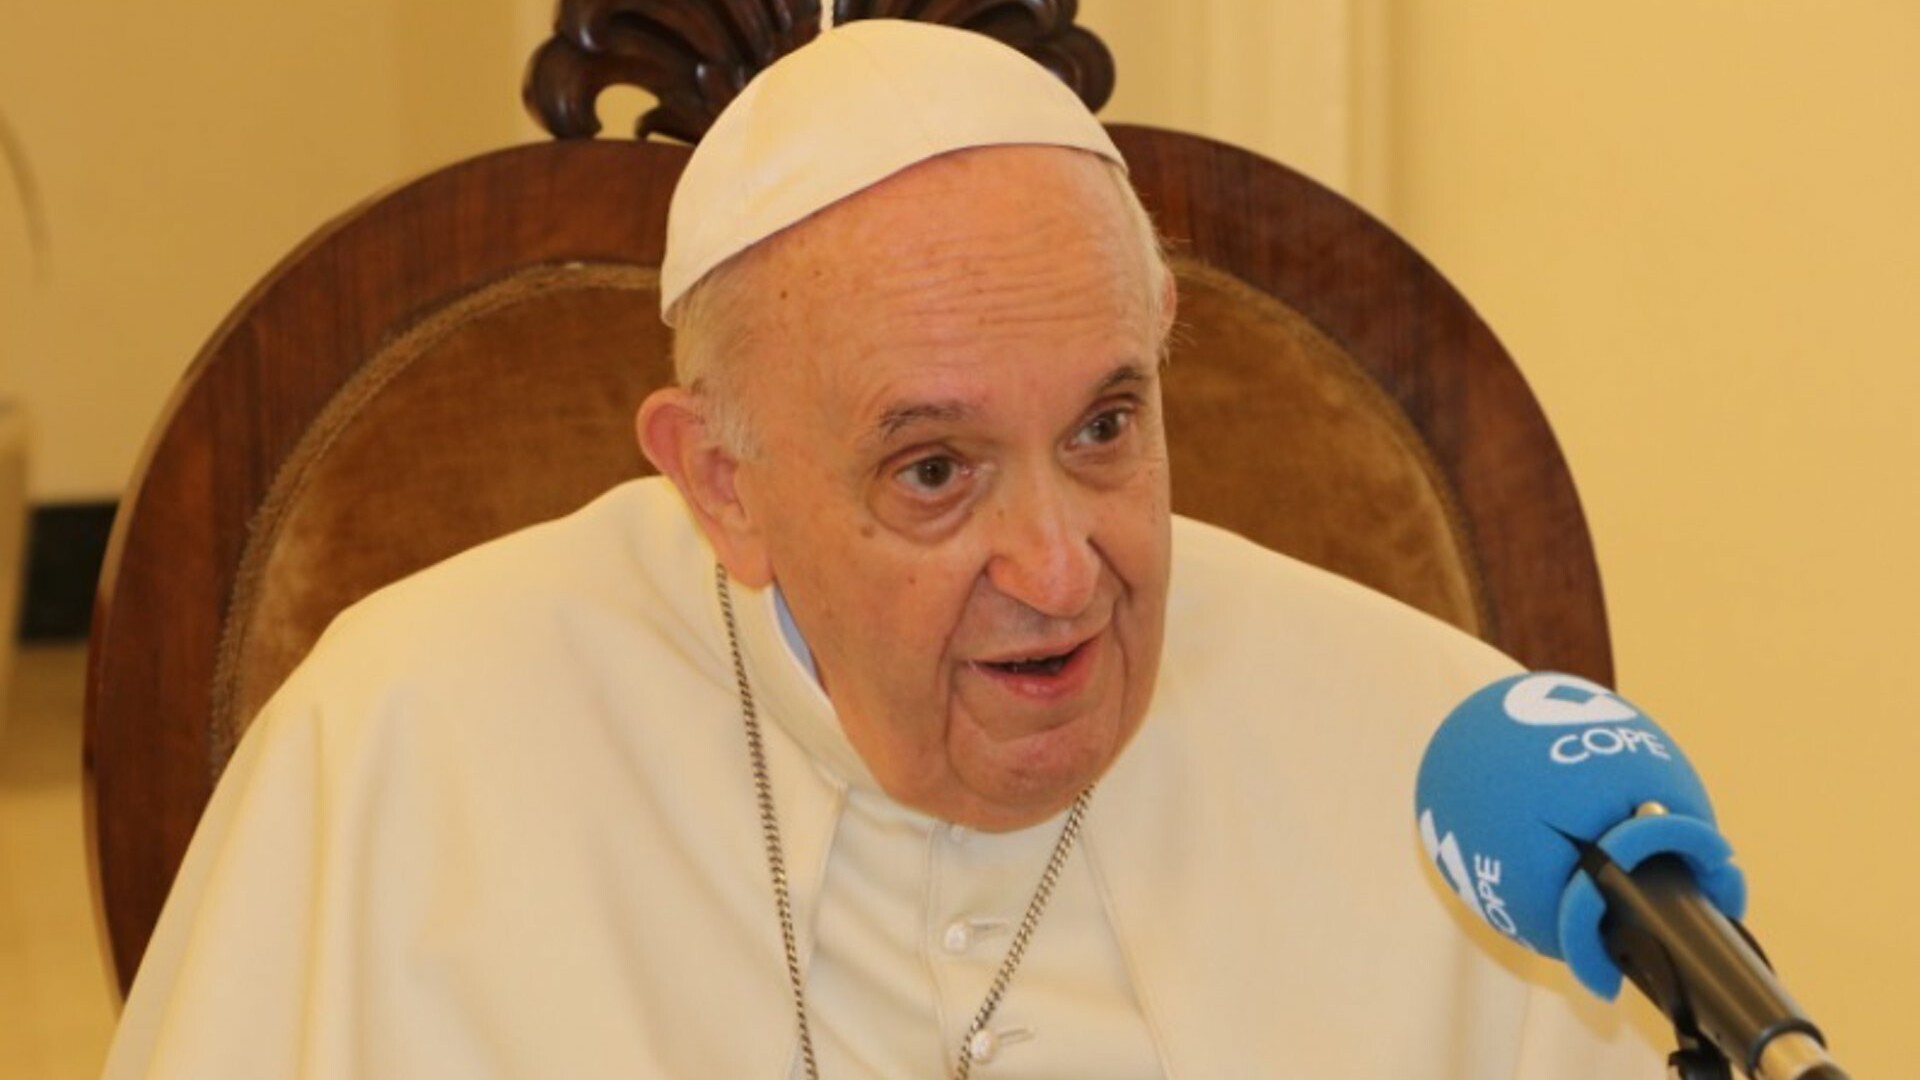 El Papa despeja las dudas sobre su salud: "Llevo una vida totalmente normal"